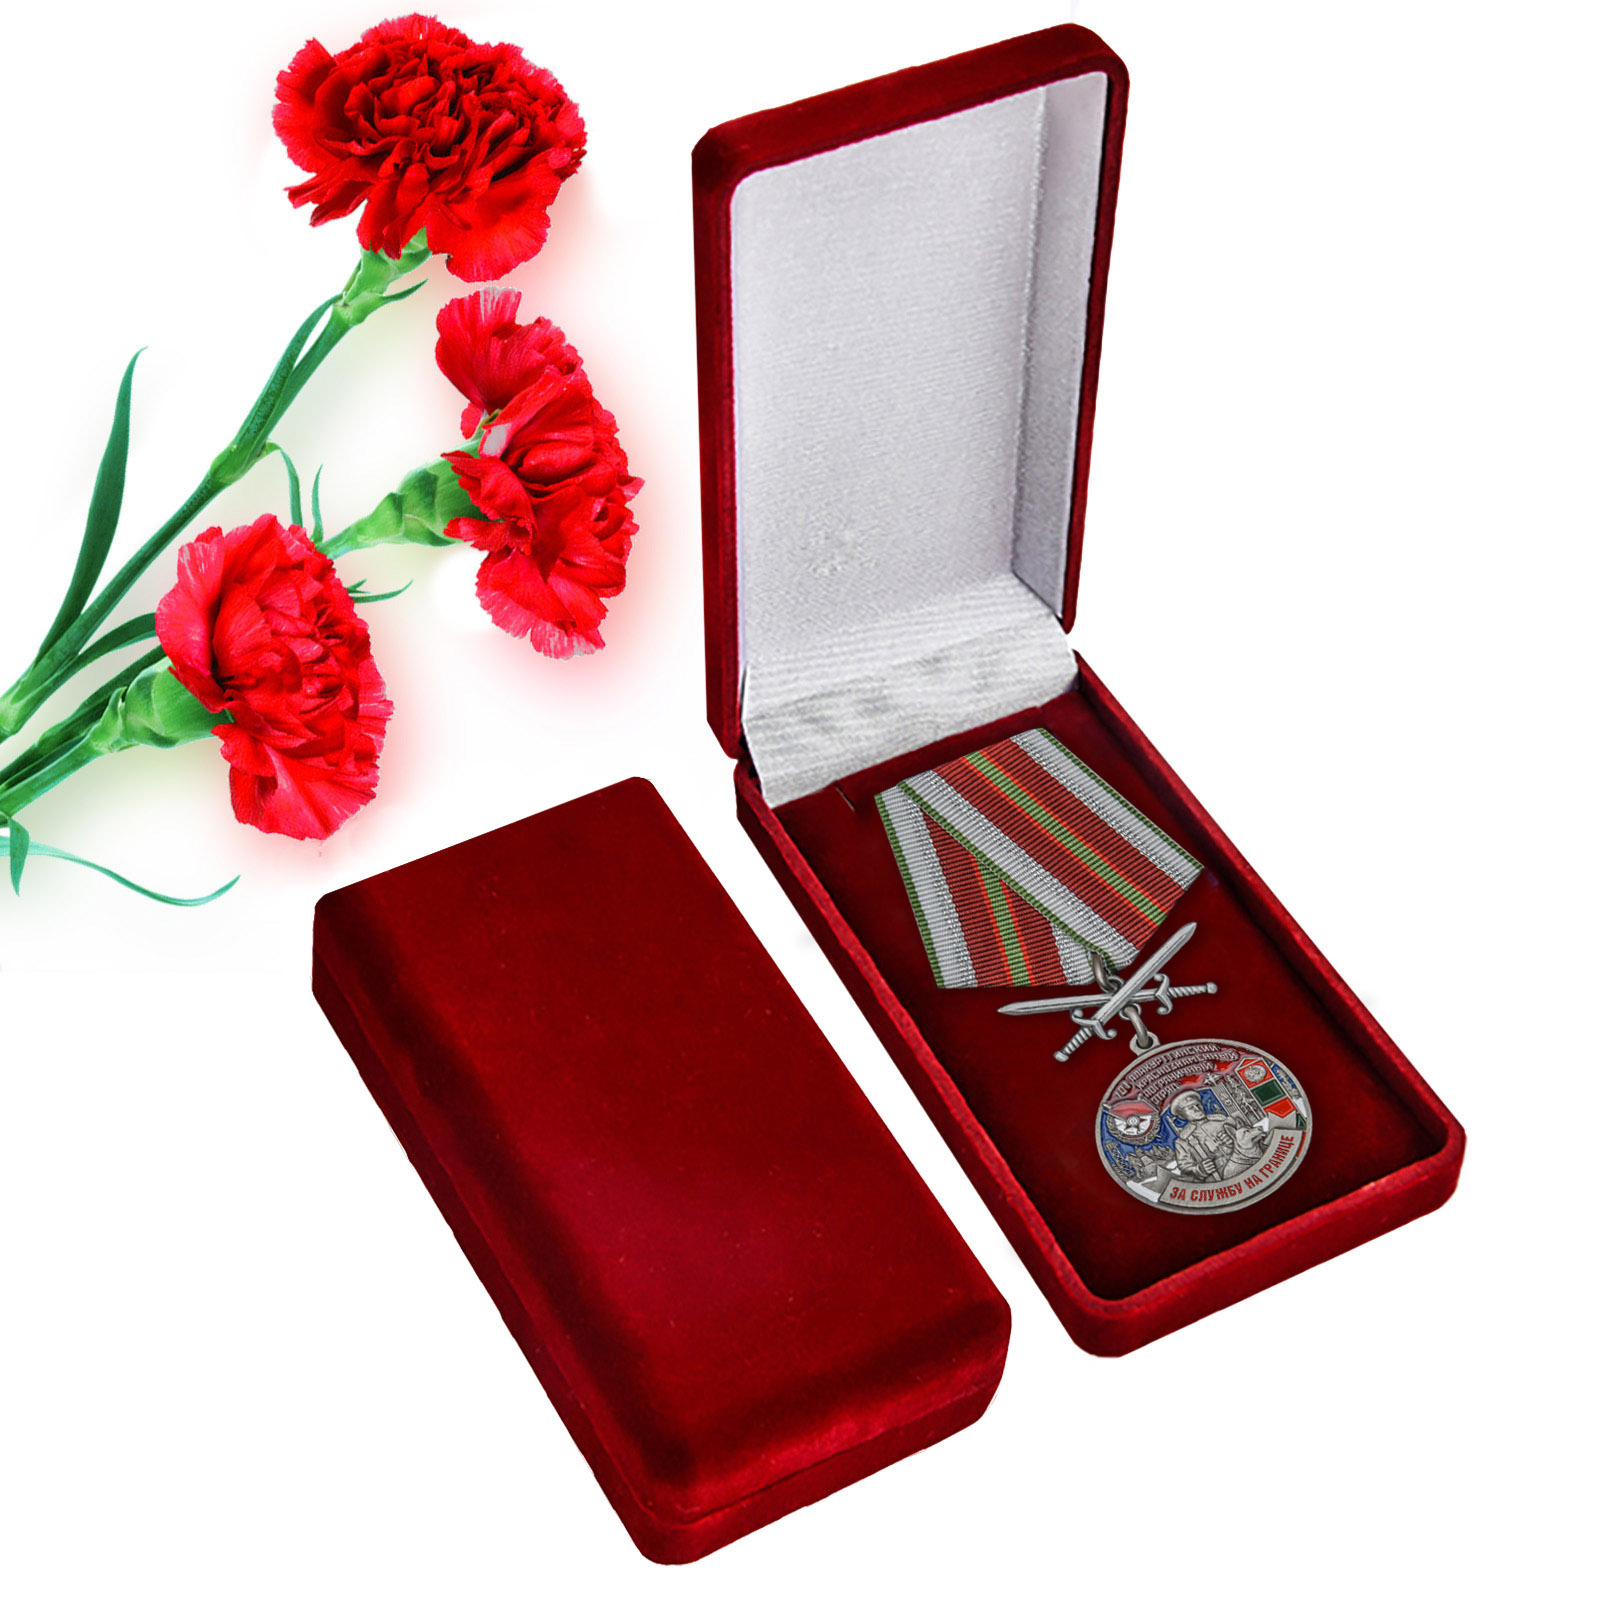 Купить медаль За службу в Алакурттинском пограничном отряде онлайн